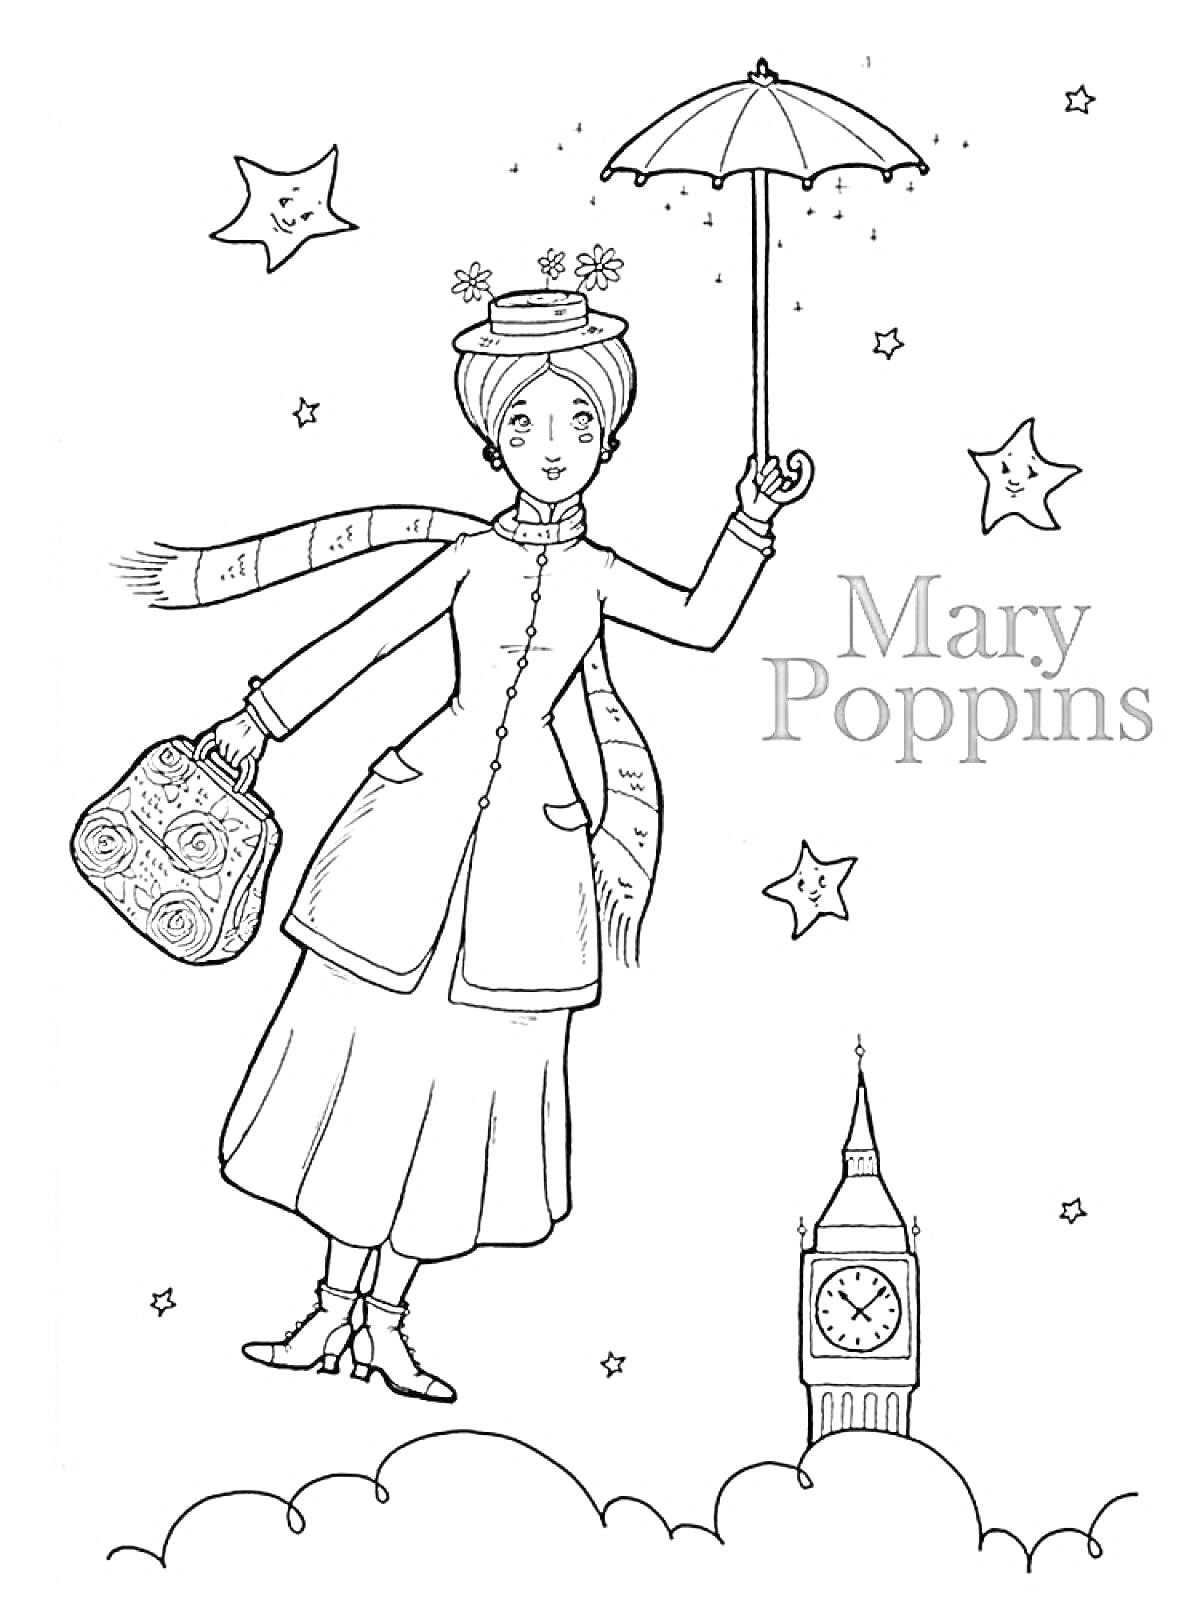 Мэри Поппинс с зонтом над Лондоном, звездочки, Биг-Бен, облака